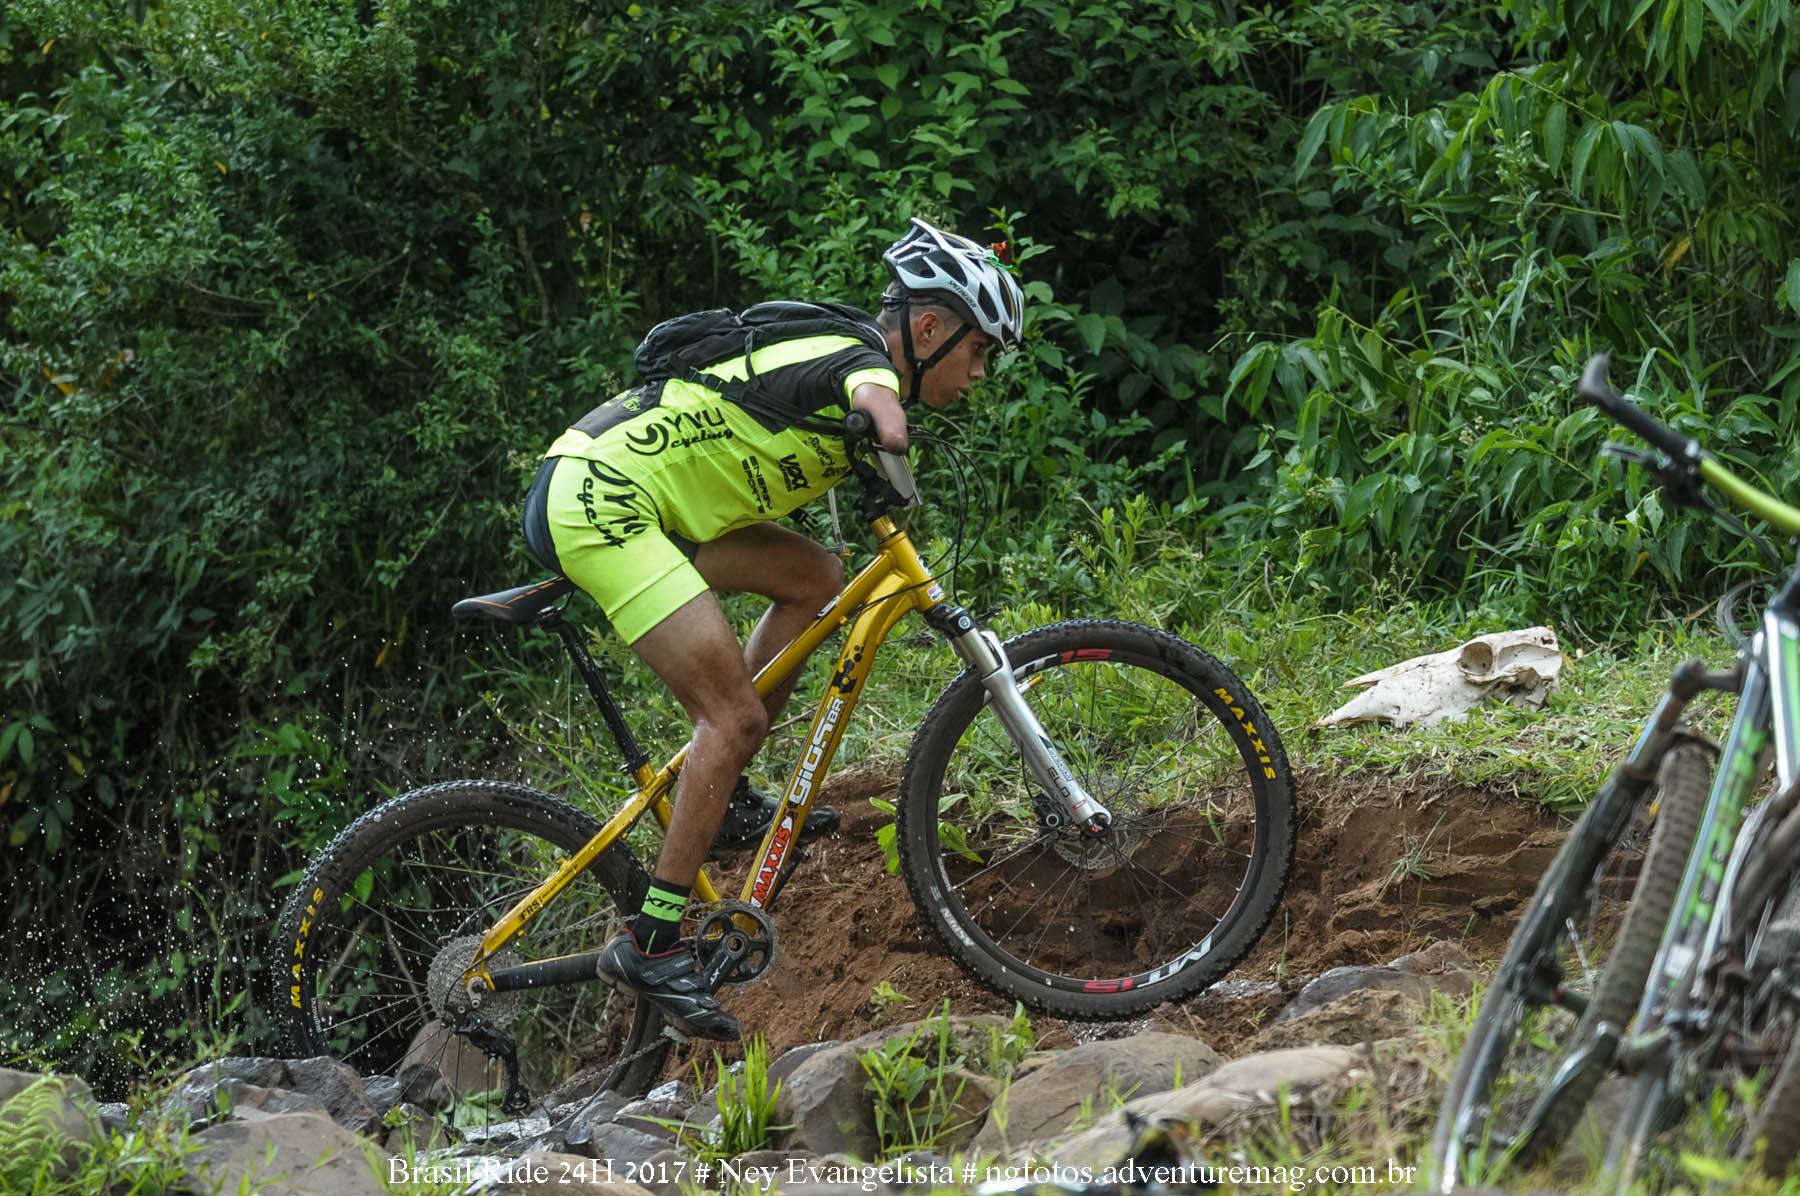 Bruno Paim durante a prova do desafio Brasil Ride 24 horas – Foto: Reprodução/Facebook/Ney Evangelista 